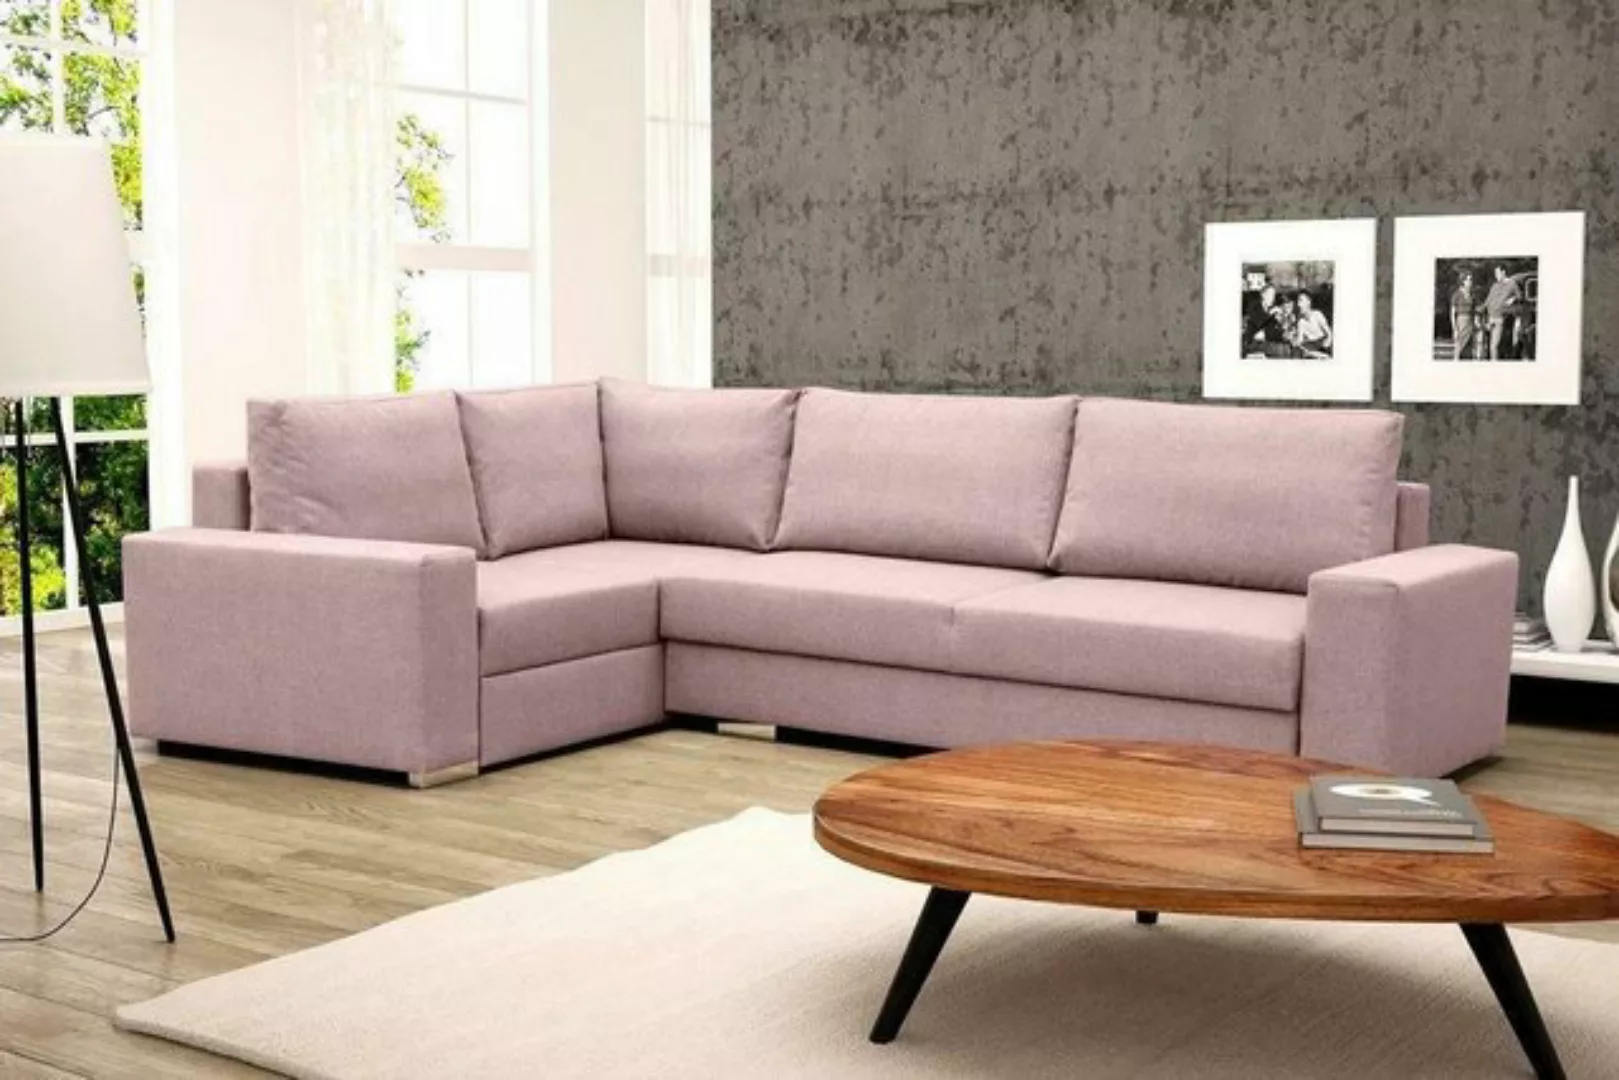 JVmoebel Ecksofa Schlafsofa Eck Sofa Couch Polster Eck Garnitur Sofas Schla günstig online kaufen